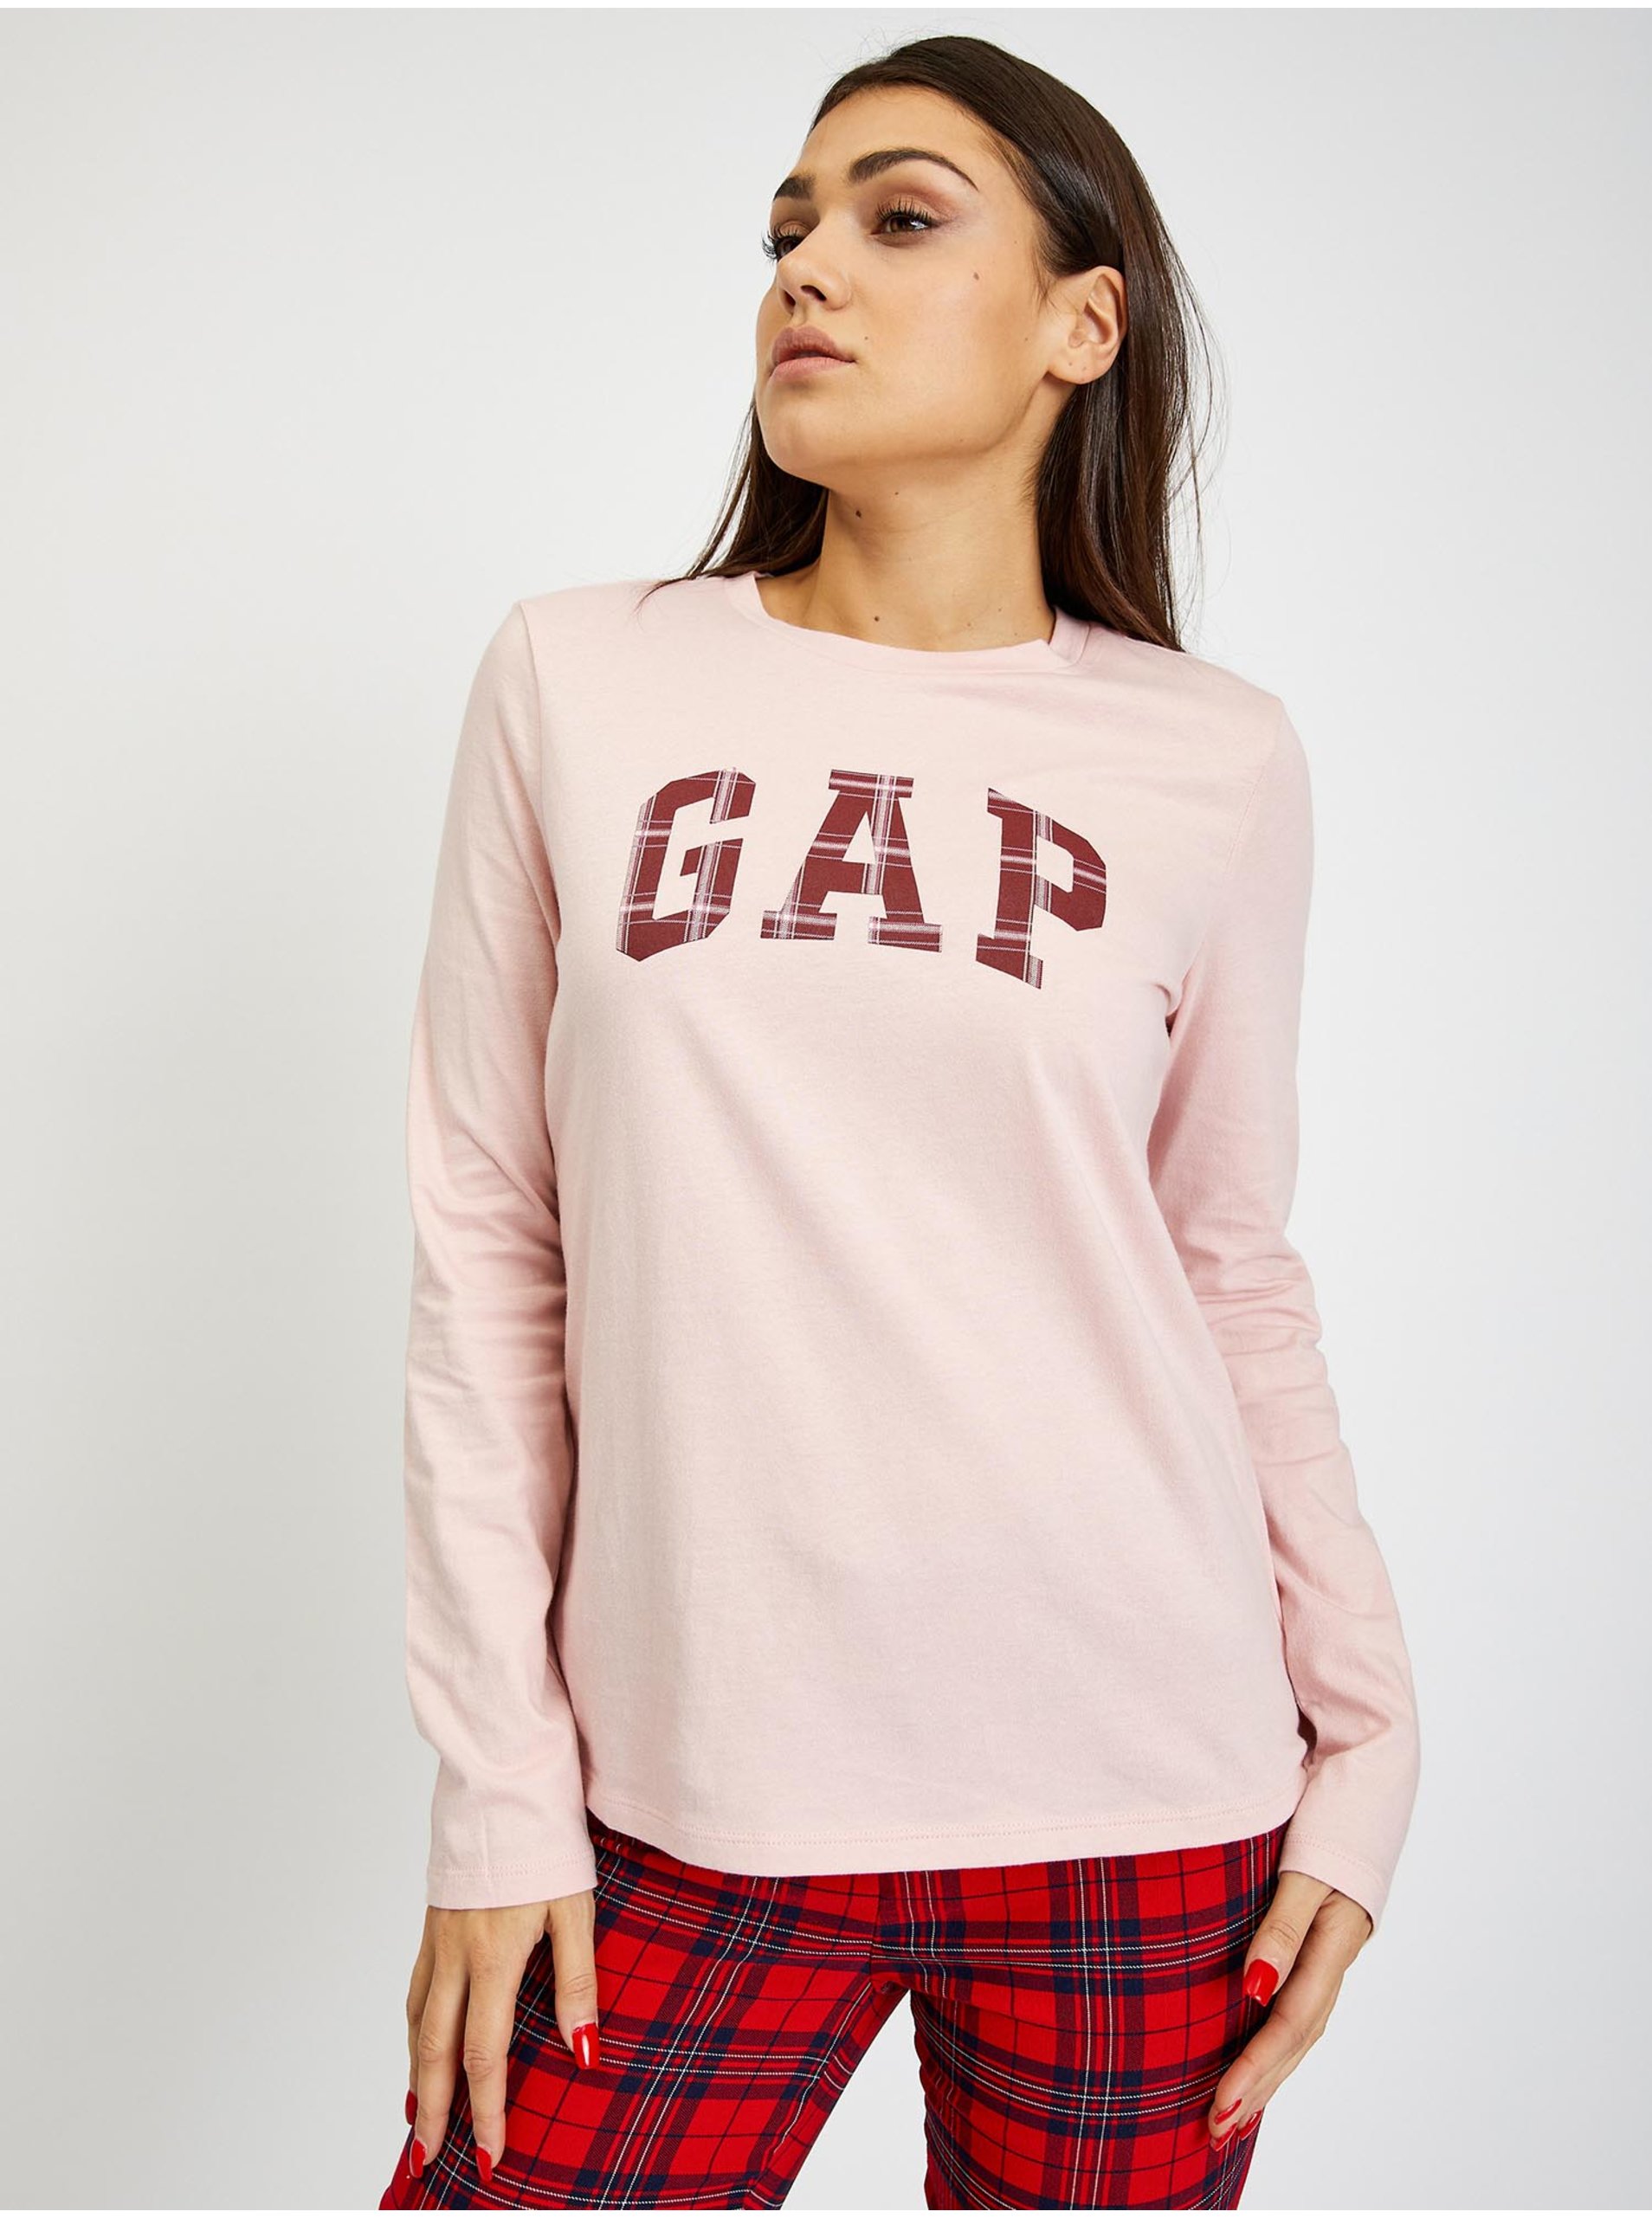 Lacno Svetloružové dámske tričko s logom GAP